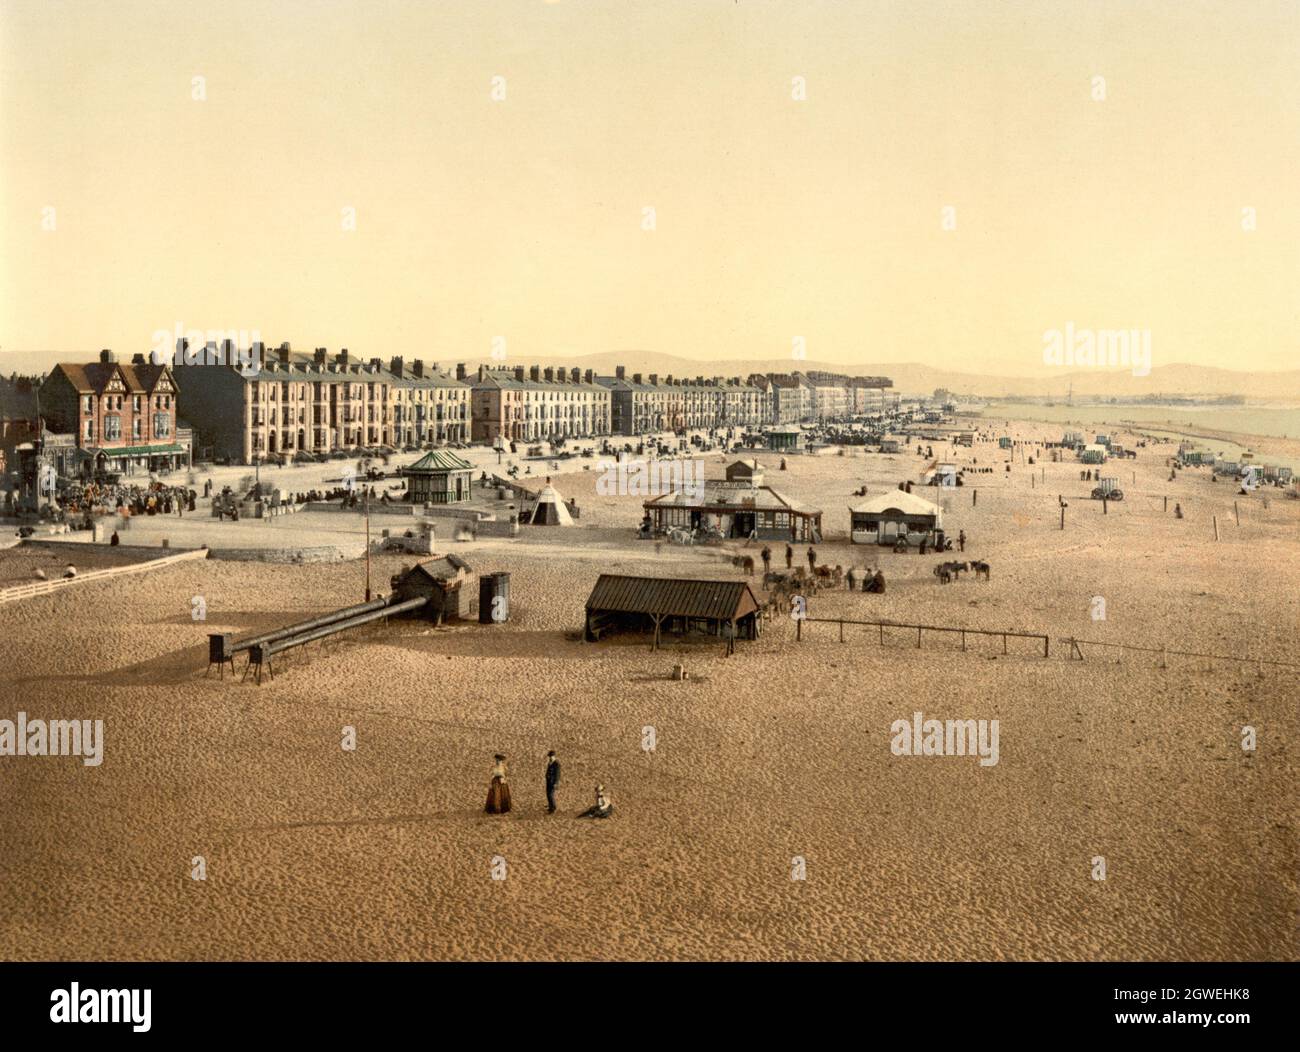 Photo couleur vintage vers 1900 du bord de mer à Rhyl sur la côte nord du pays de Galles pendant la période victorienne Banque D'Images